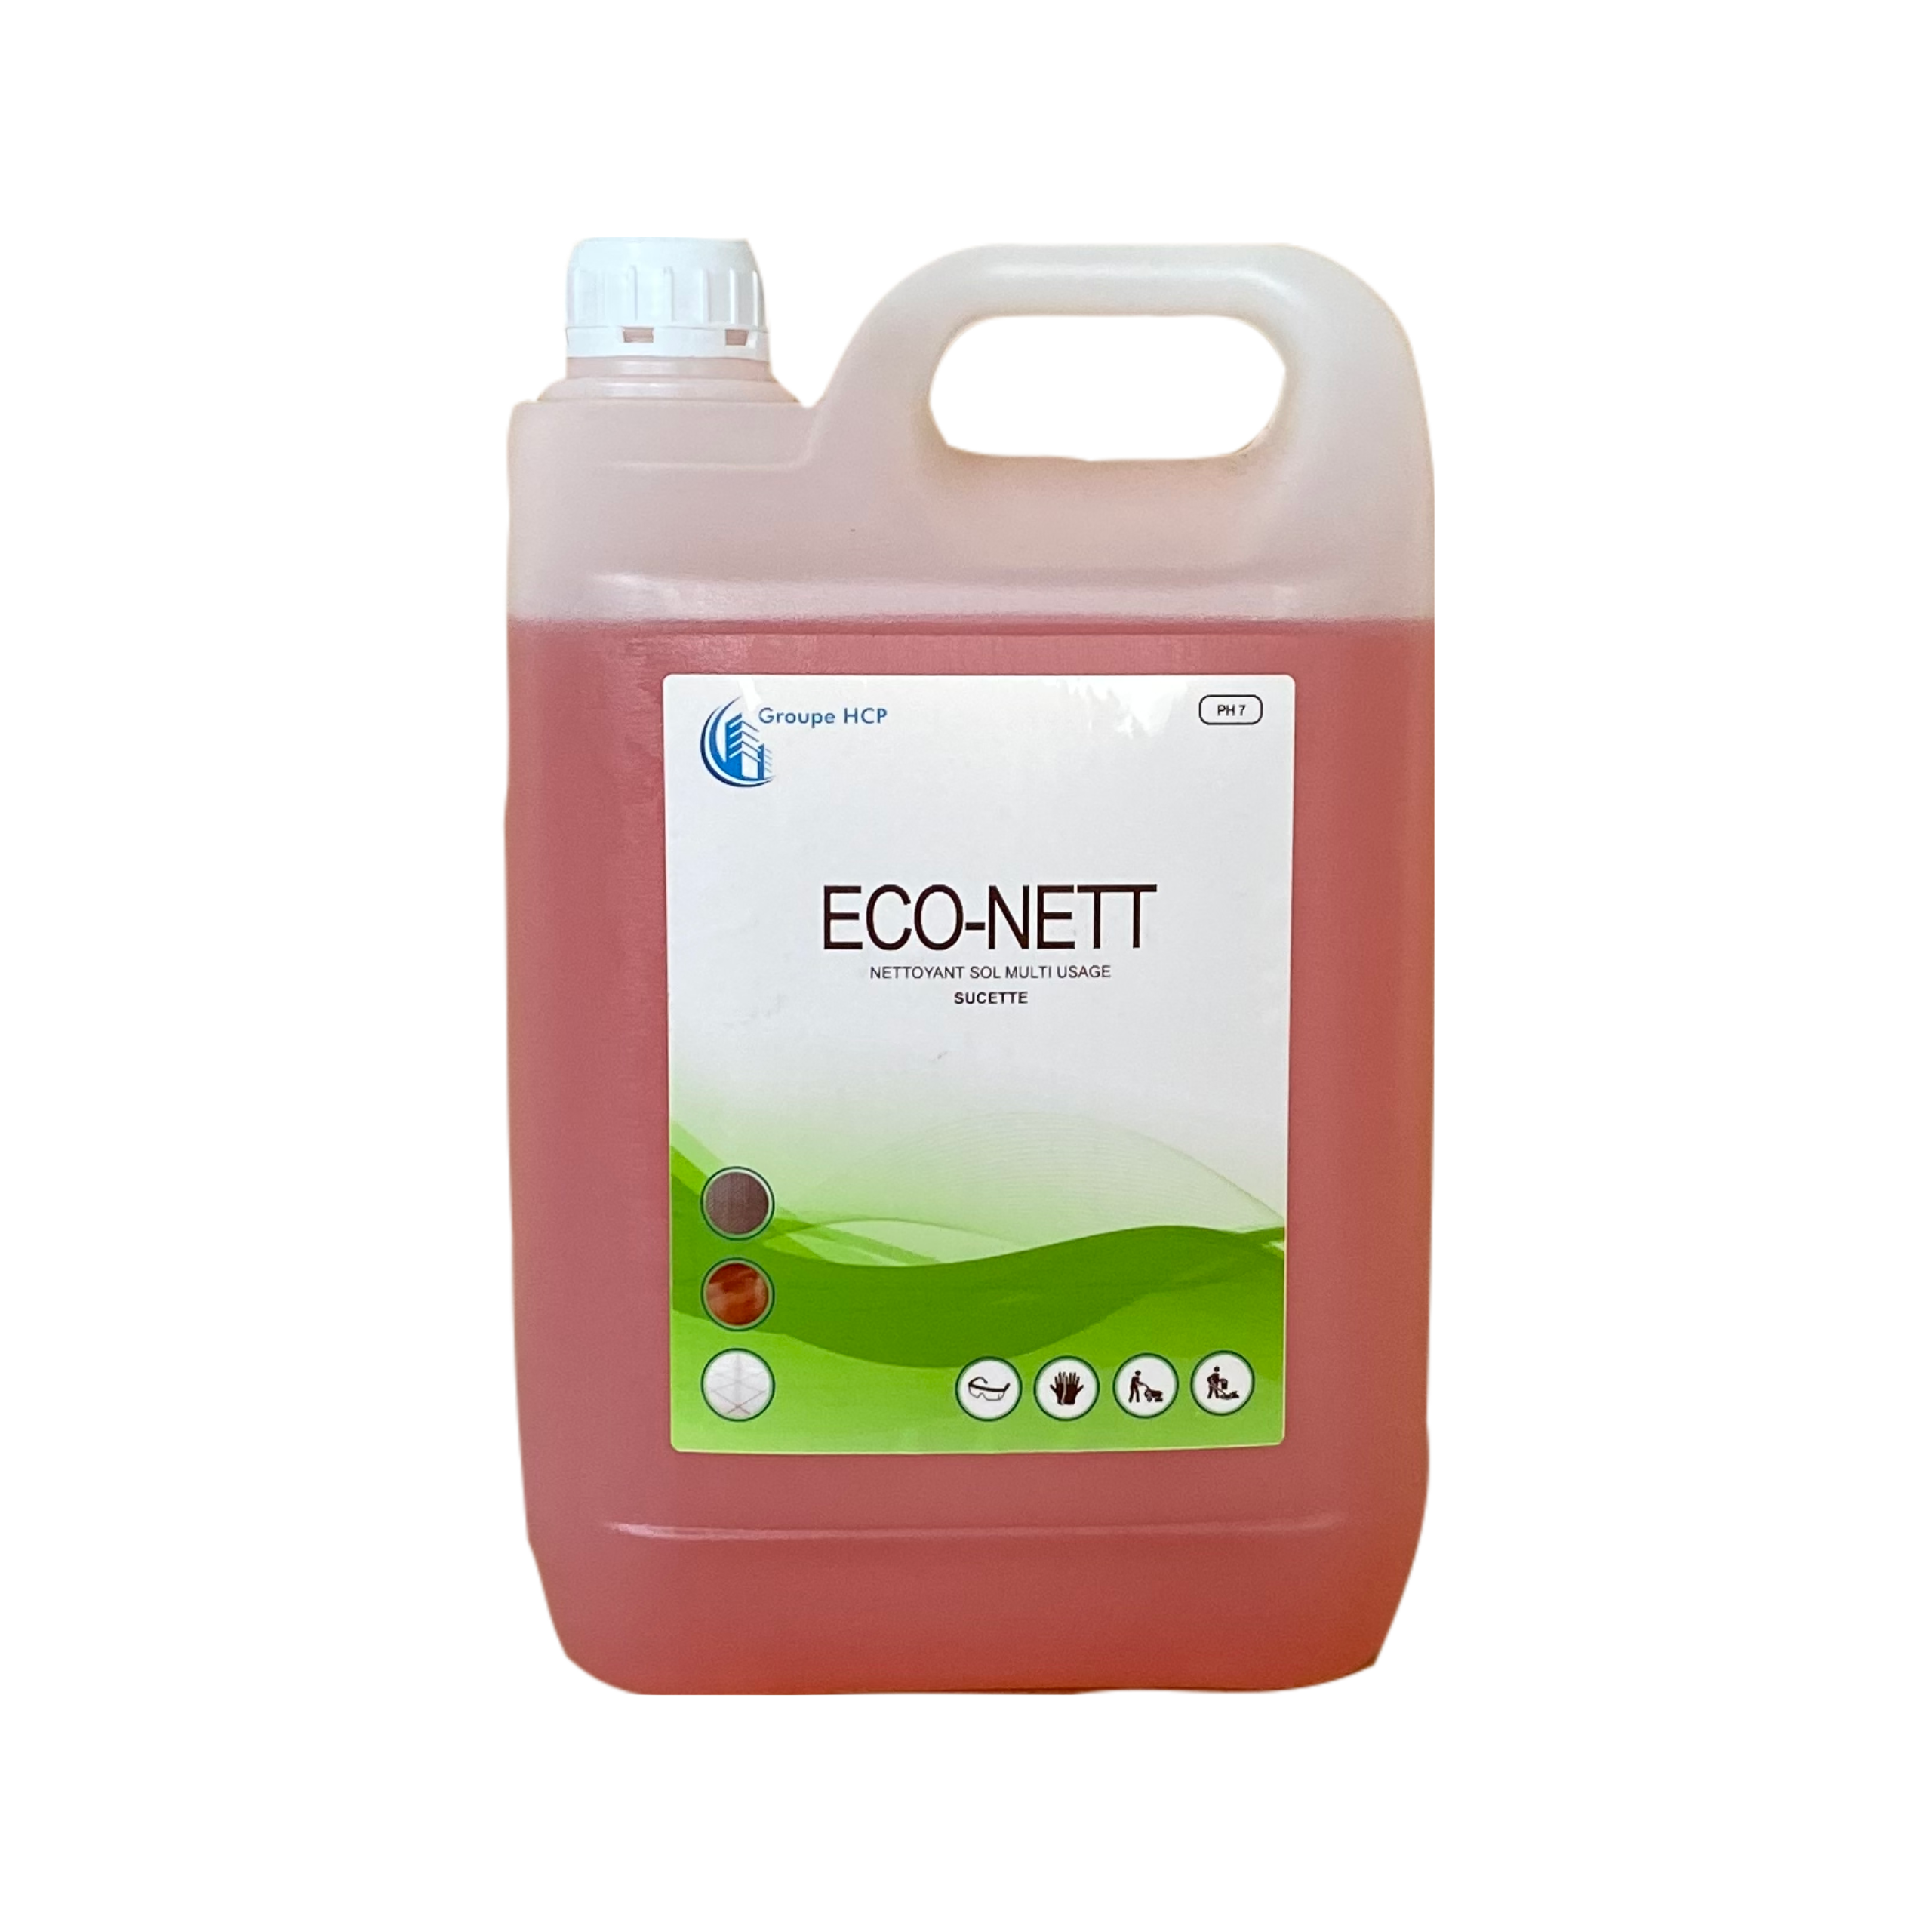 Nettoyant sol- Parfum Air frais - Eco-nett - Bidon de 5L - Groupe HCP